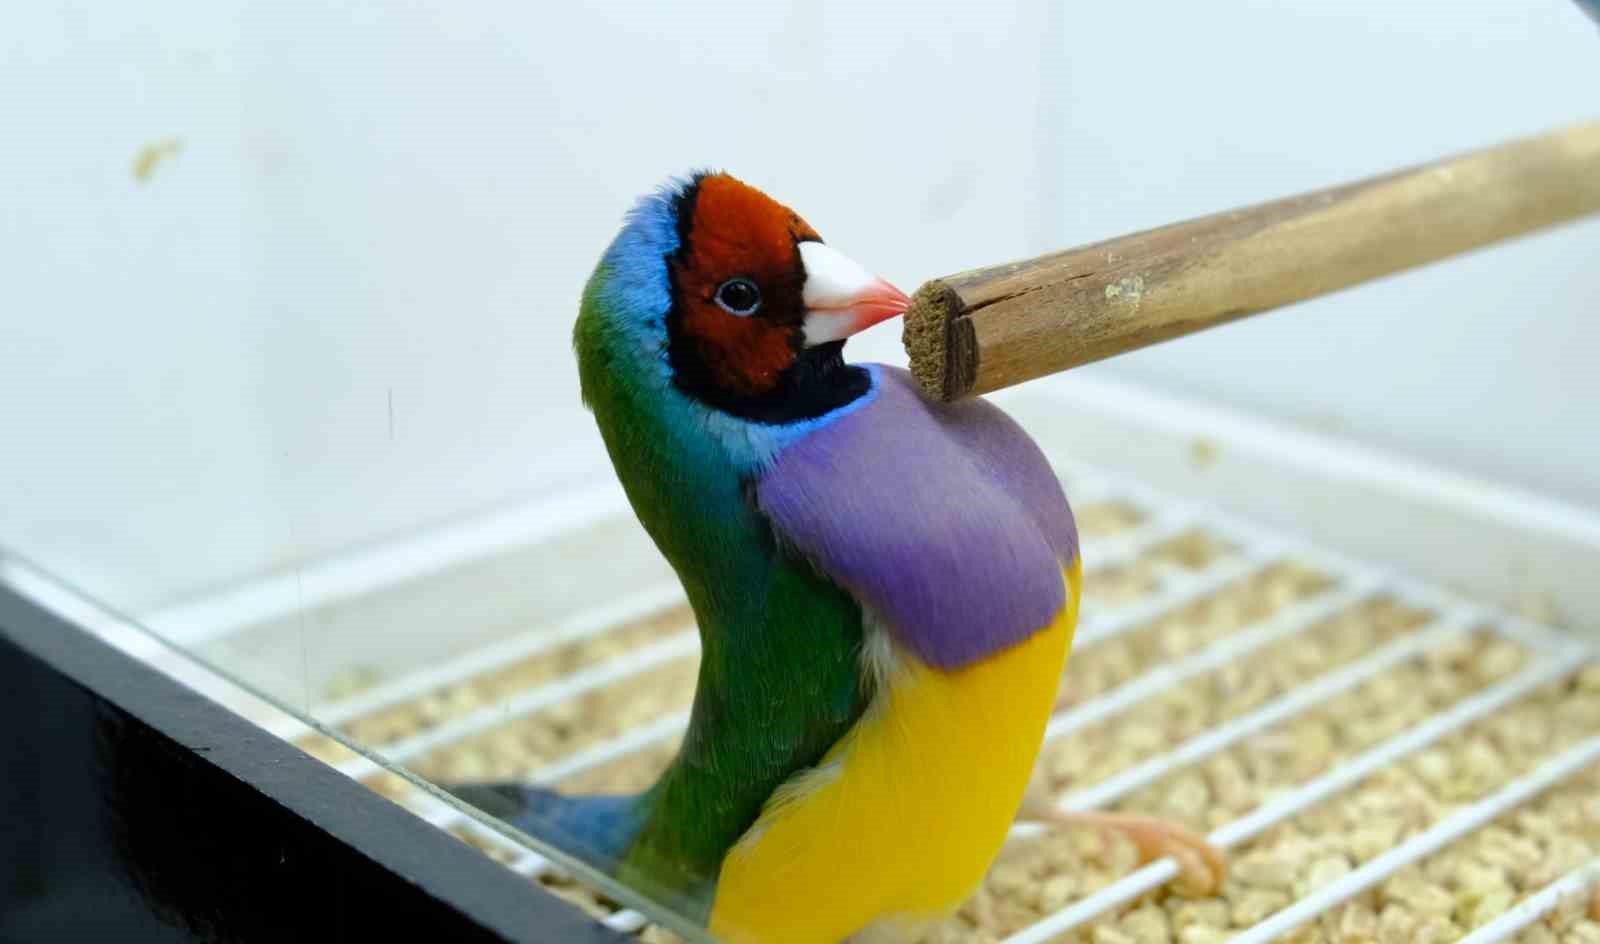 Egzotik Kuşların Kur Dansları Renkli Görüntüler Oluşturdu